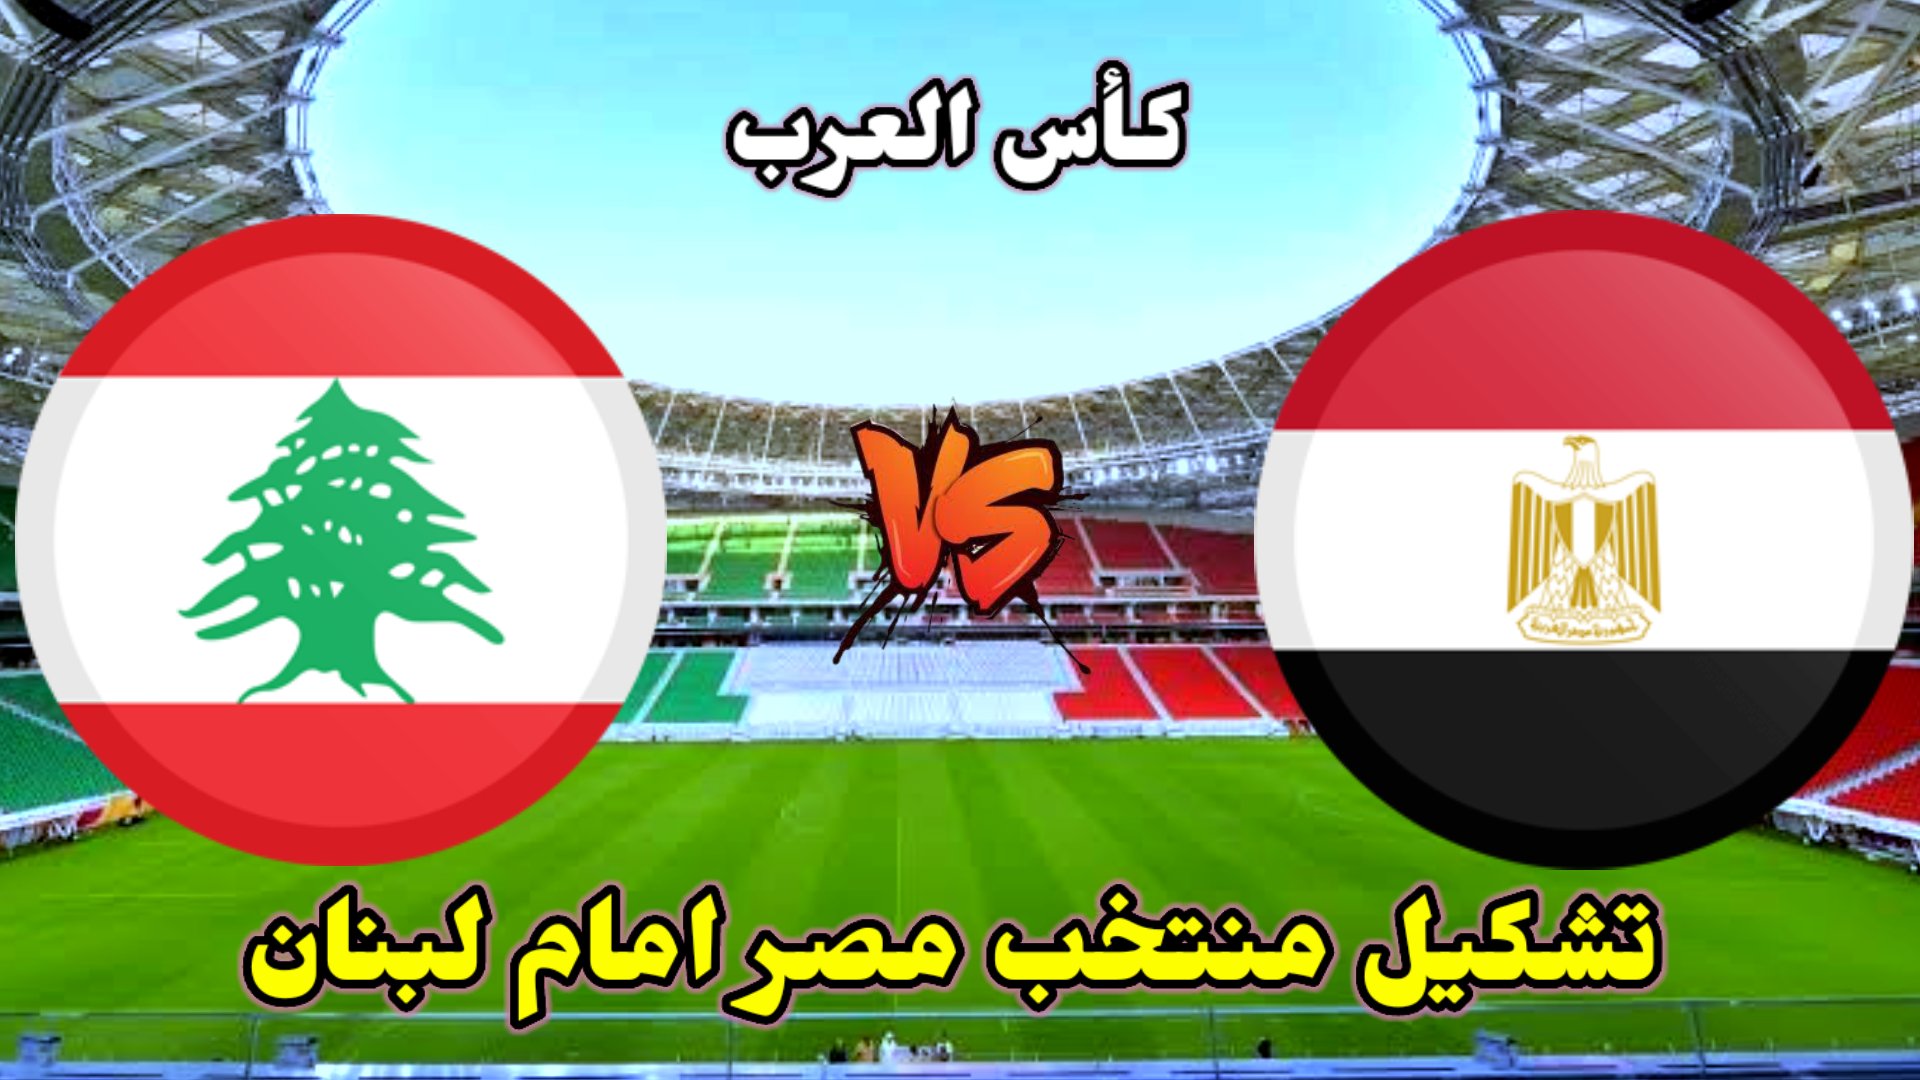 La selección egipcia se enfrenta al Líbano en la Copa Árabe de Fútbol de Doha 2